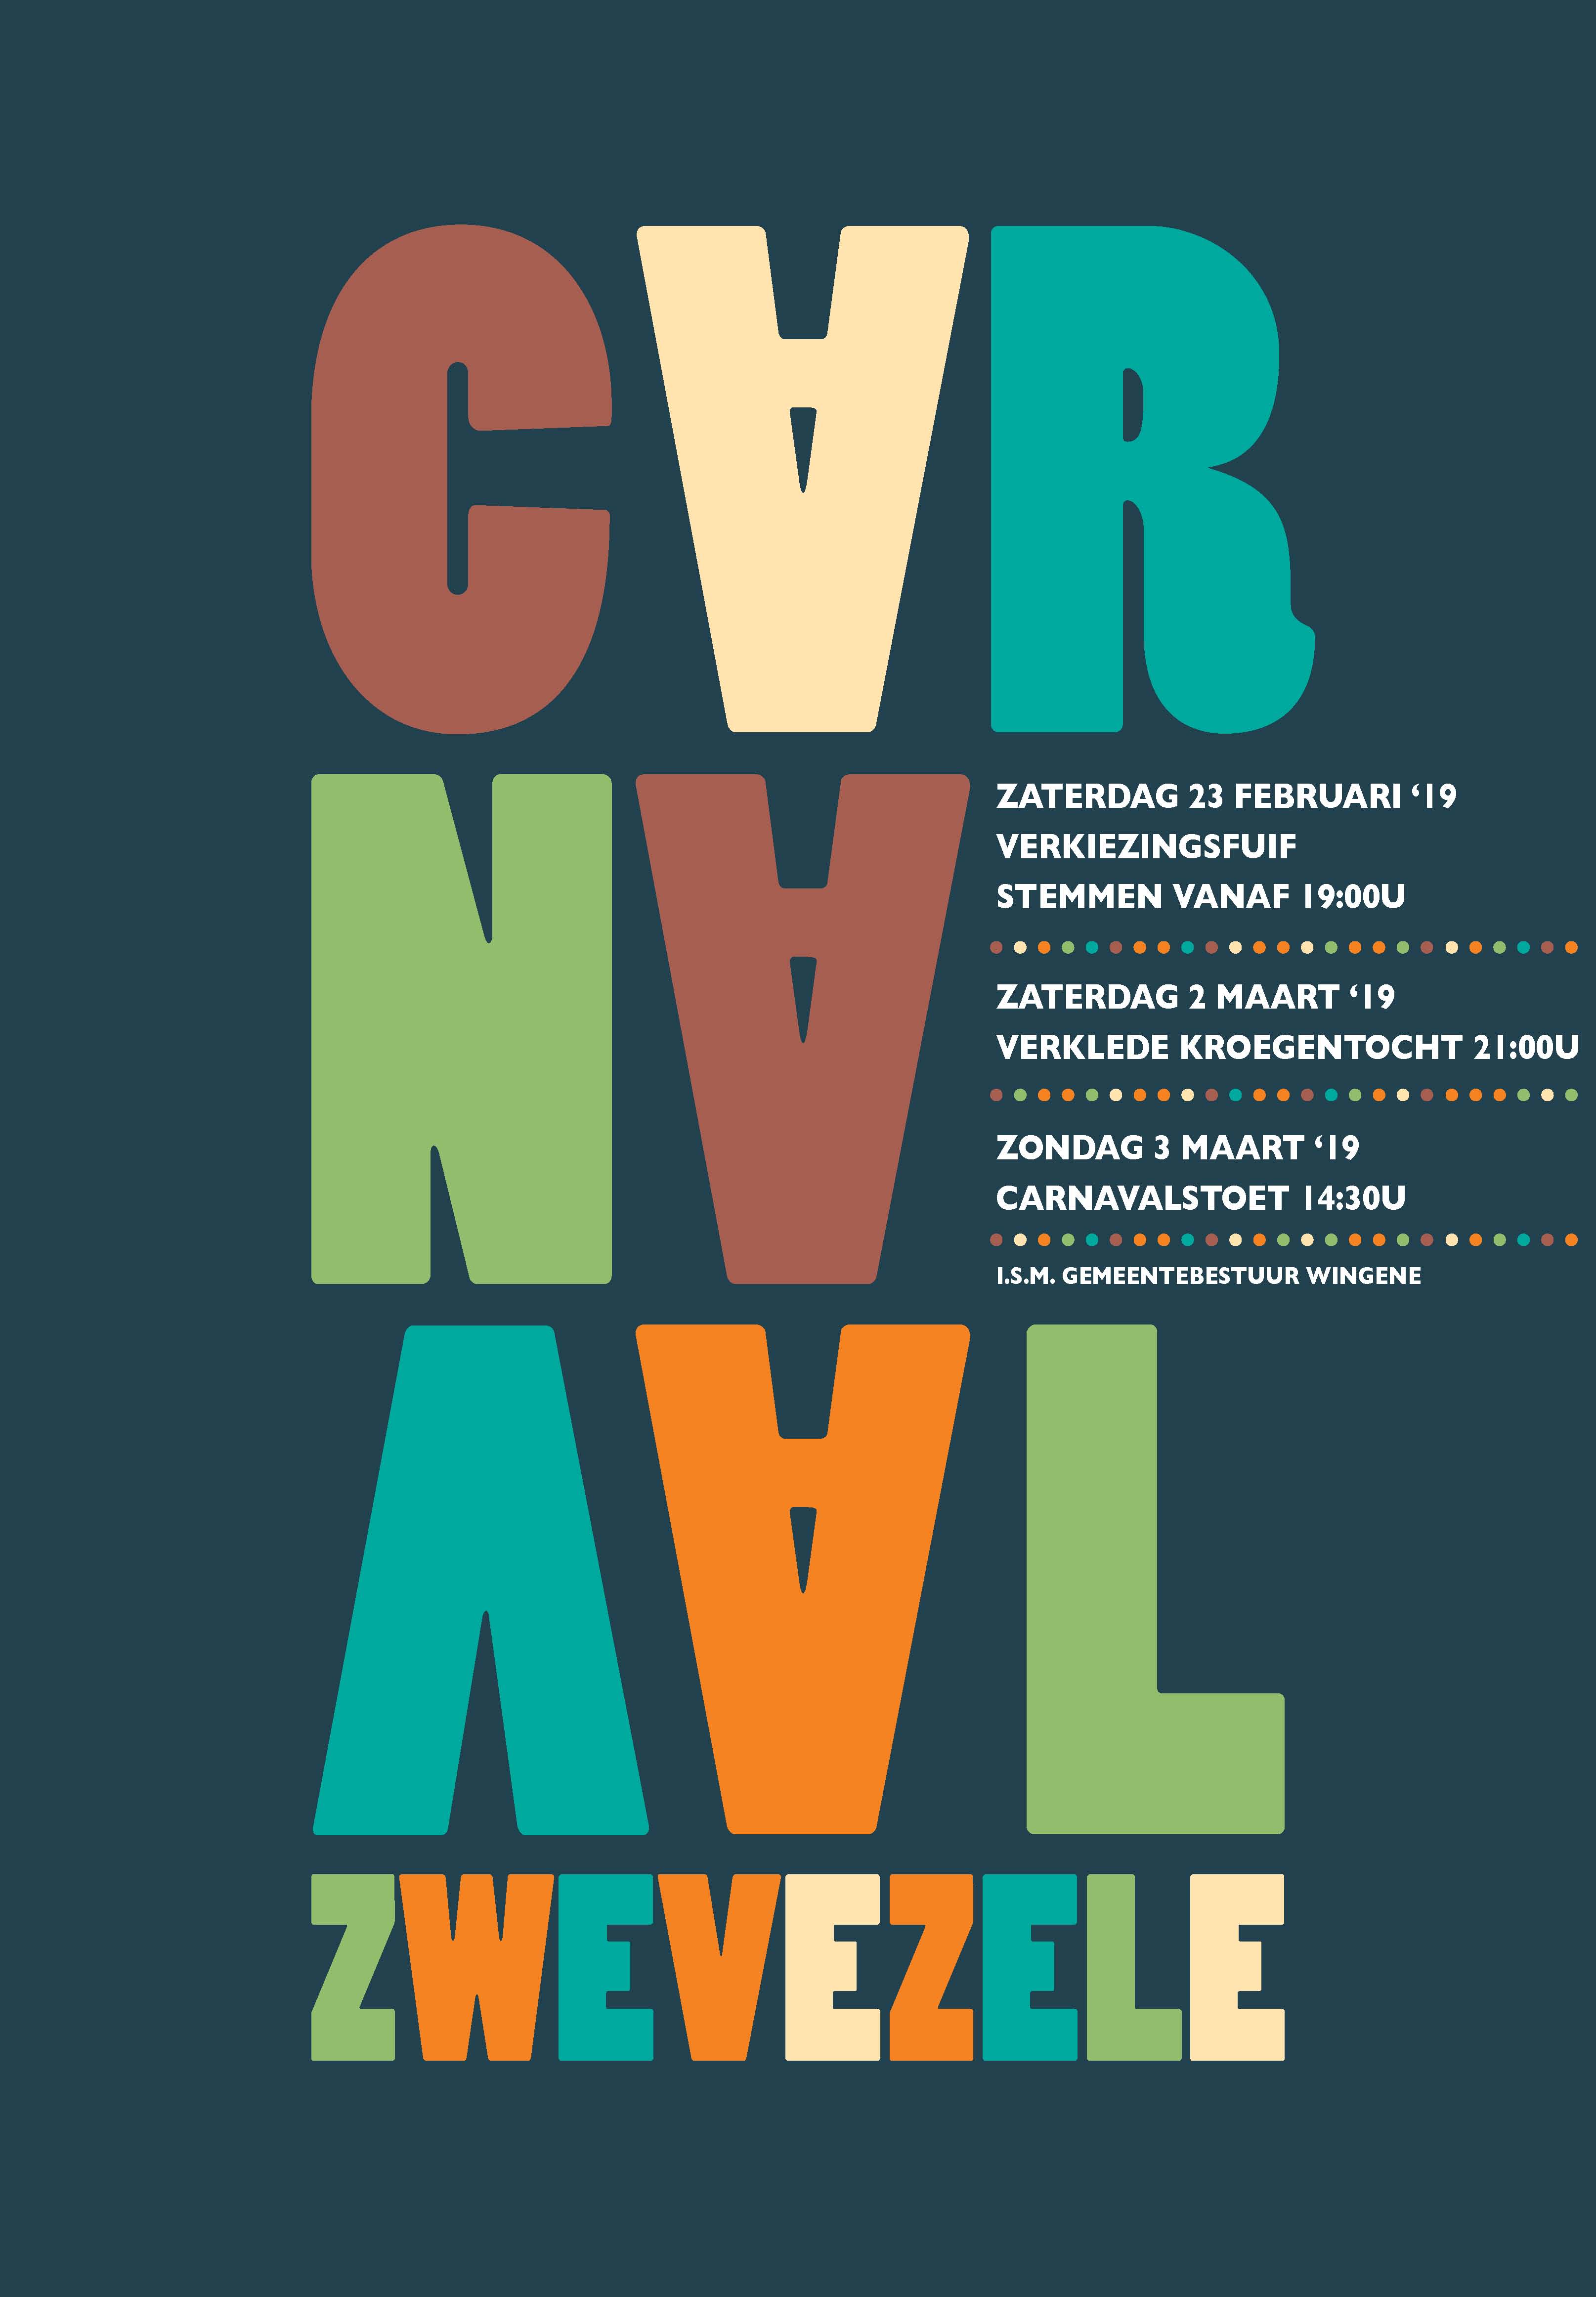 Carnaval Zwevezele 2019 carnavalstoet affiche optreden Luc Steeno 